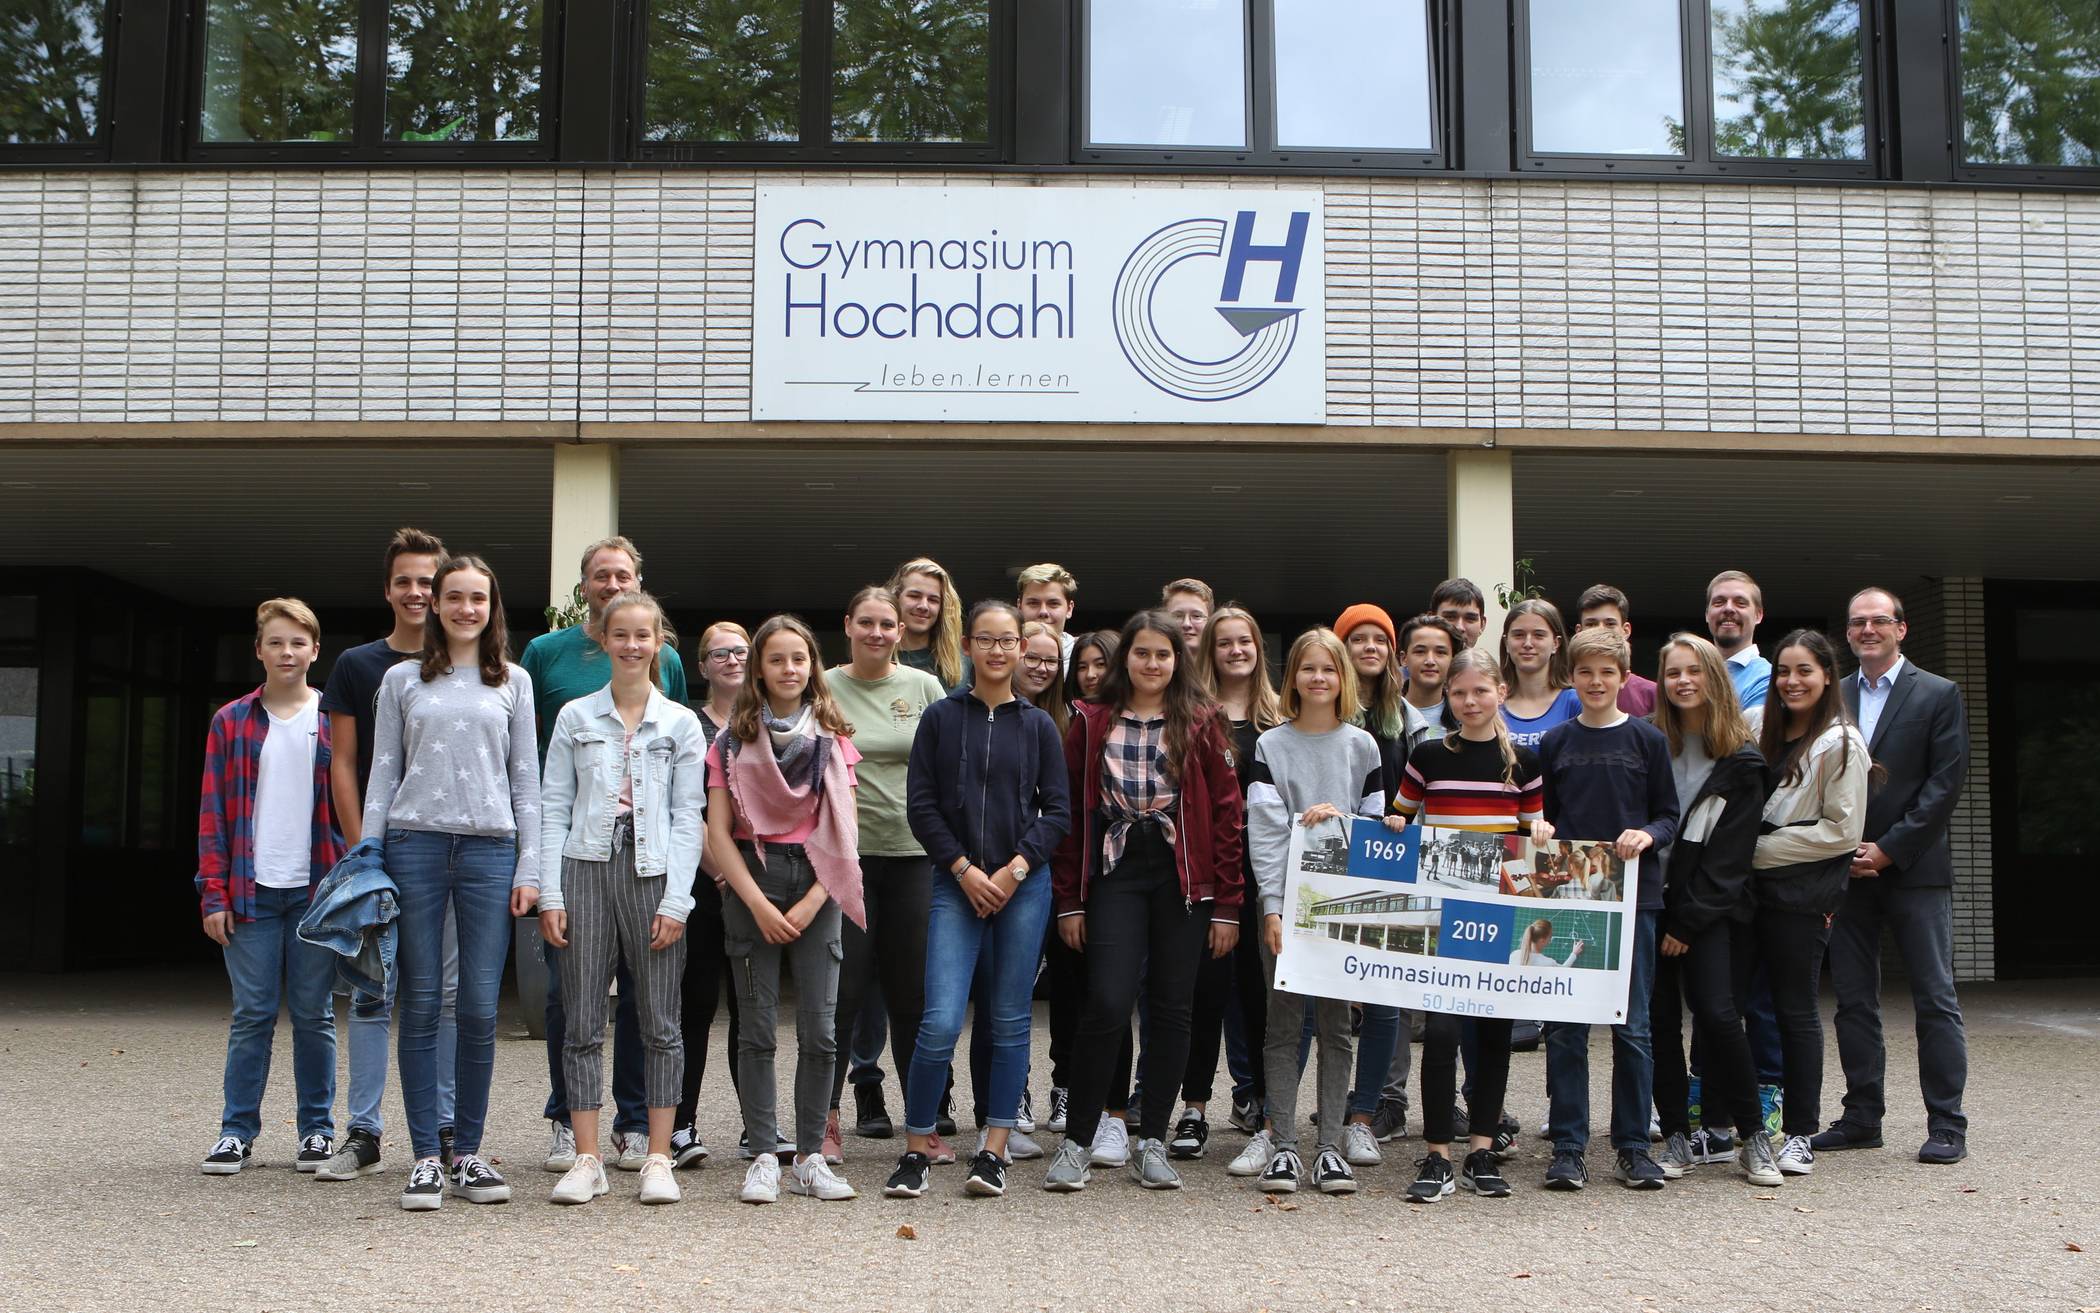  Schüler, Lehrer, Eltern und Ehemalige des Gymnasiums Hochdahl feiern in diesem Monat das 50jährige Jubiläum ihrer Schule. 